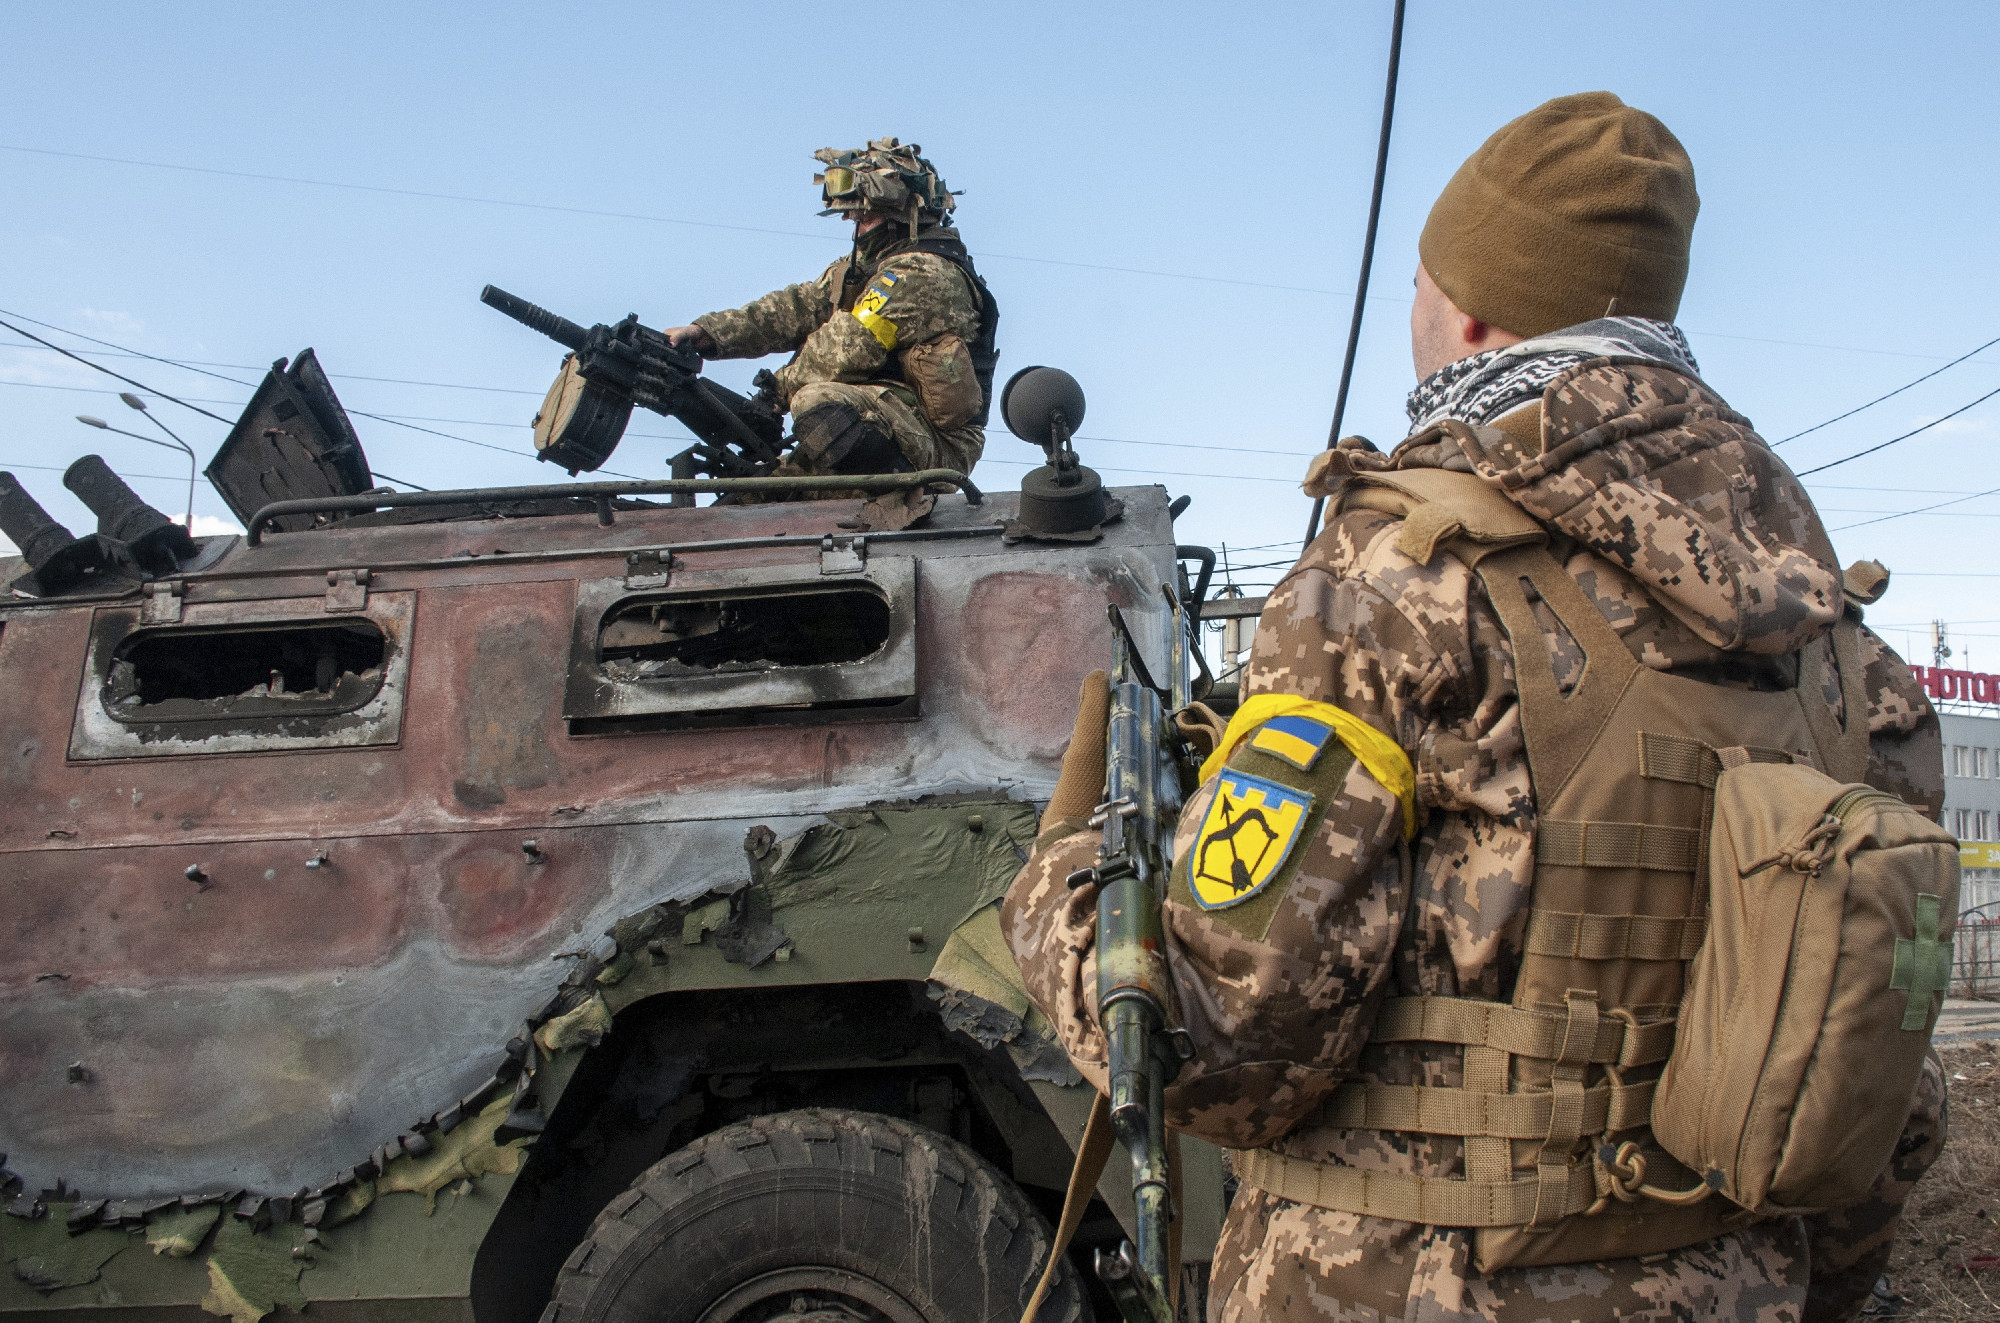 Belgium is küld fegyvereket Ukrajnának